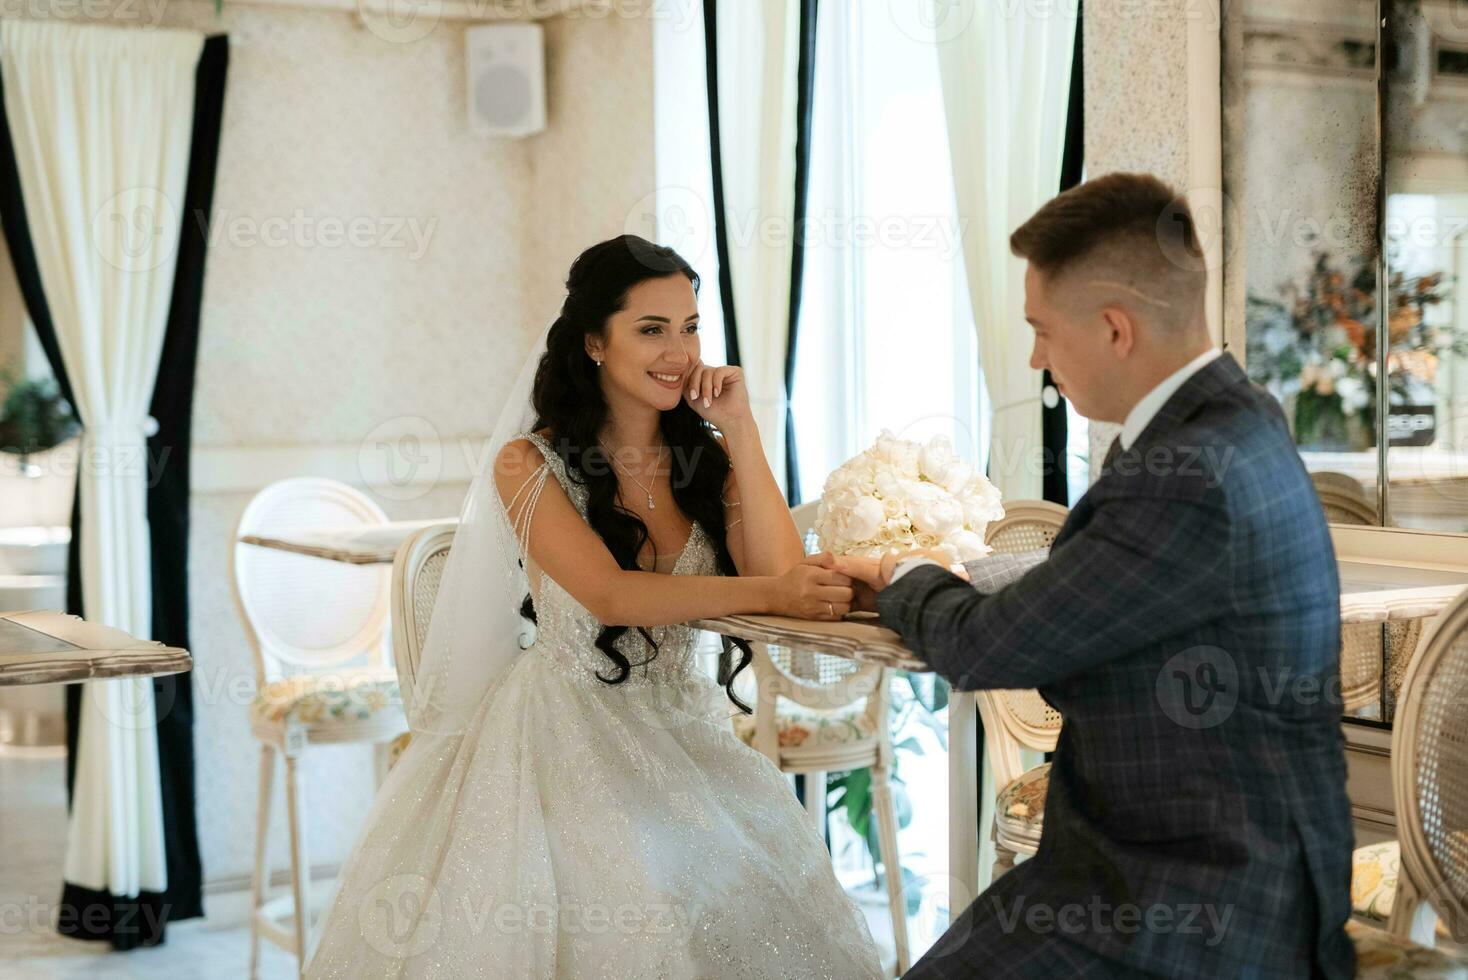 bruden och brudgummen inne i en cocktailbar foto